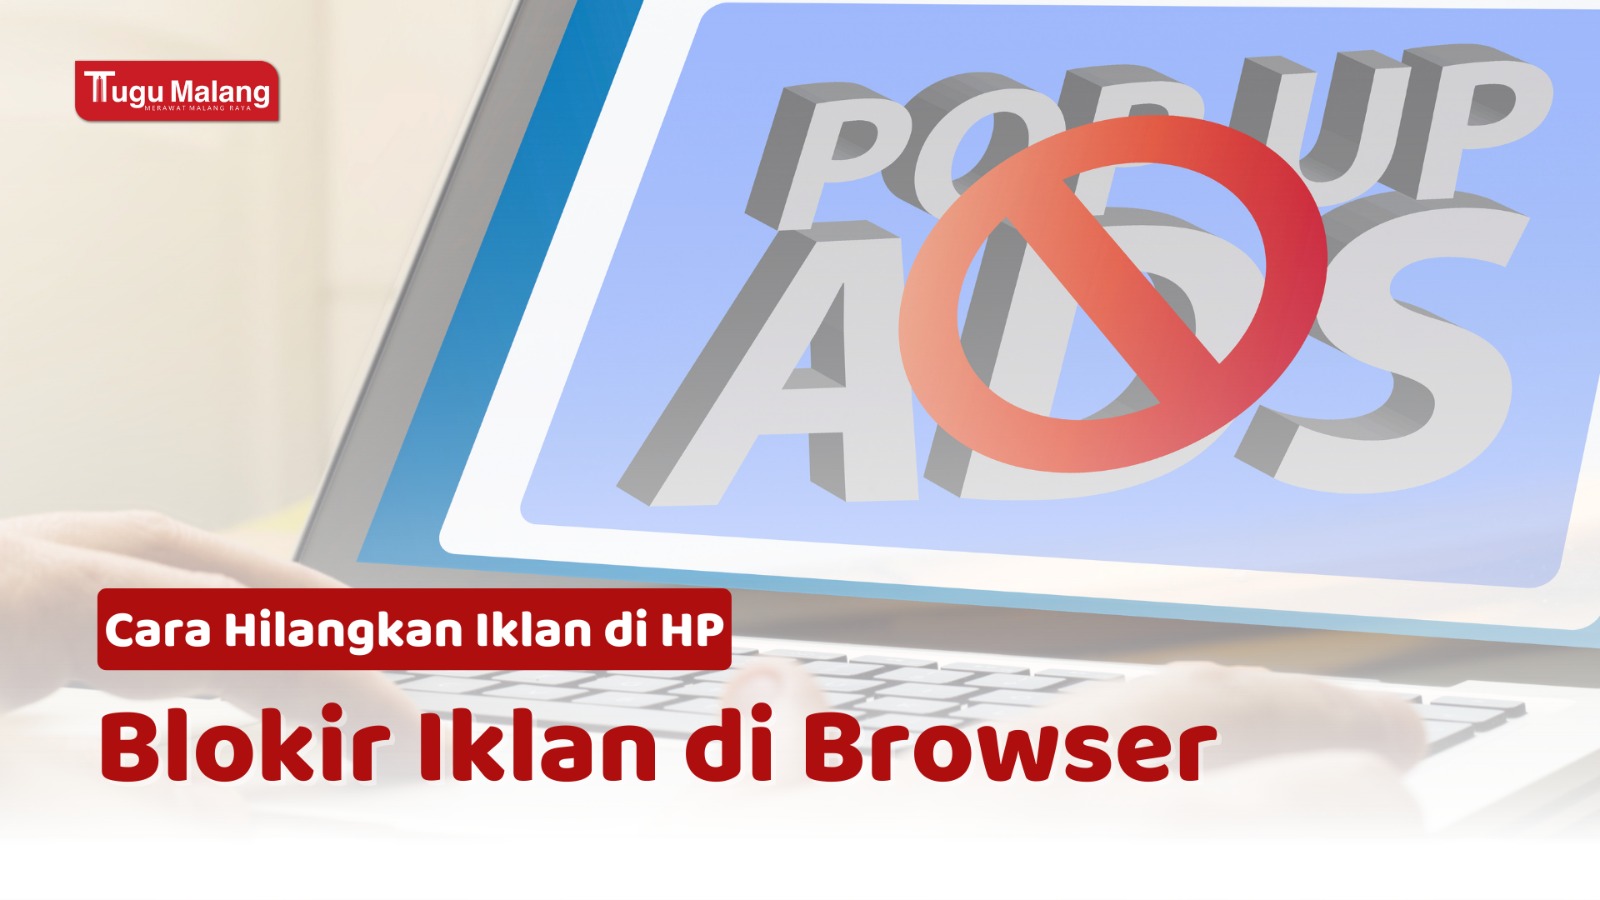 Memblokir iklan di browser, cara ampuh hilangkan iklan di HP.